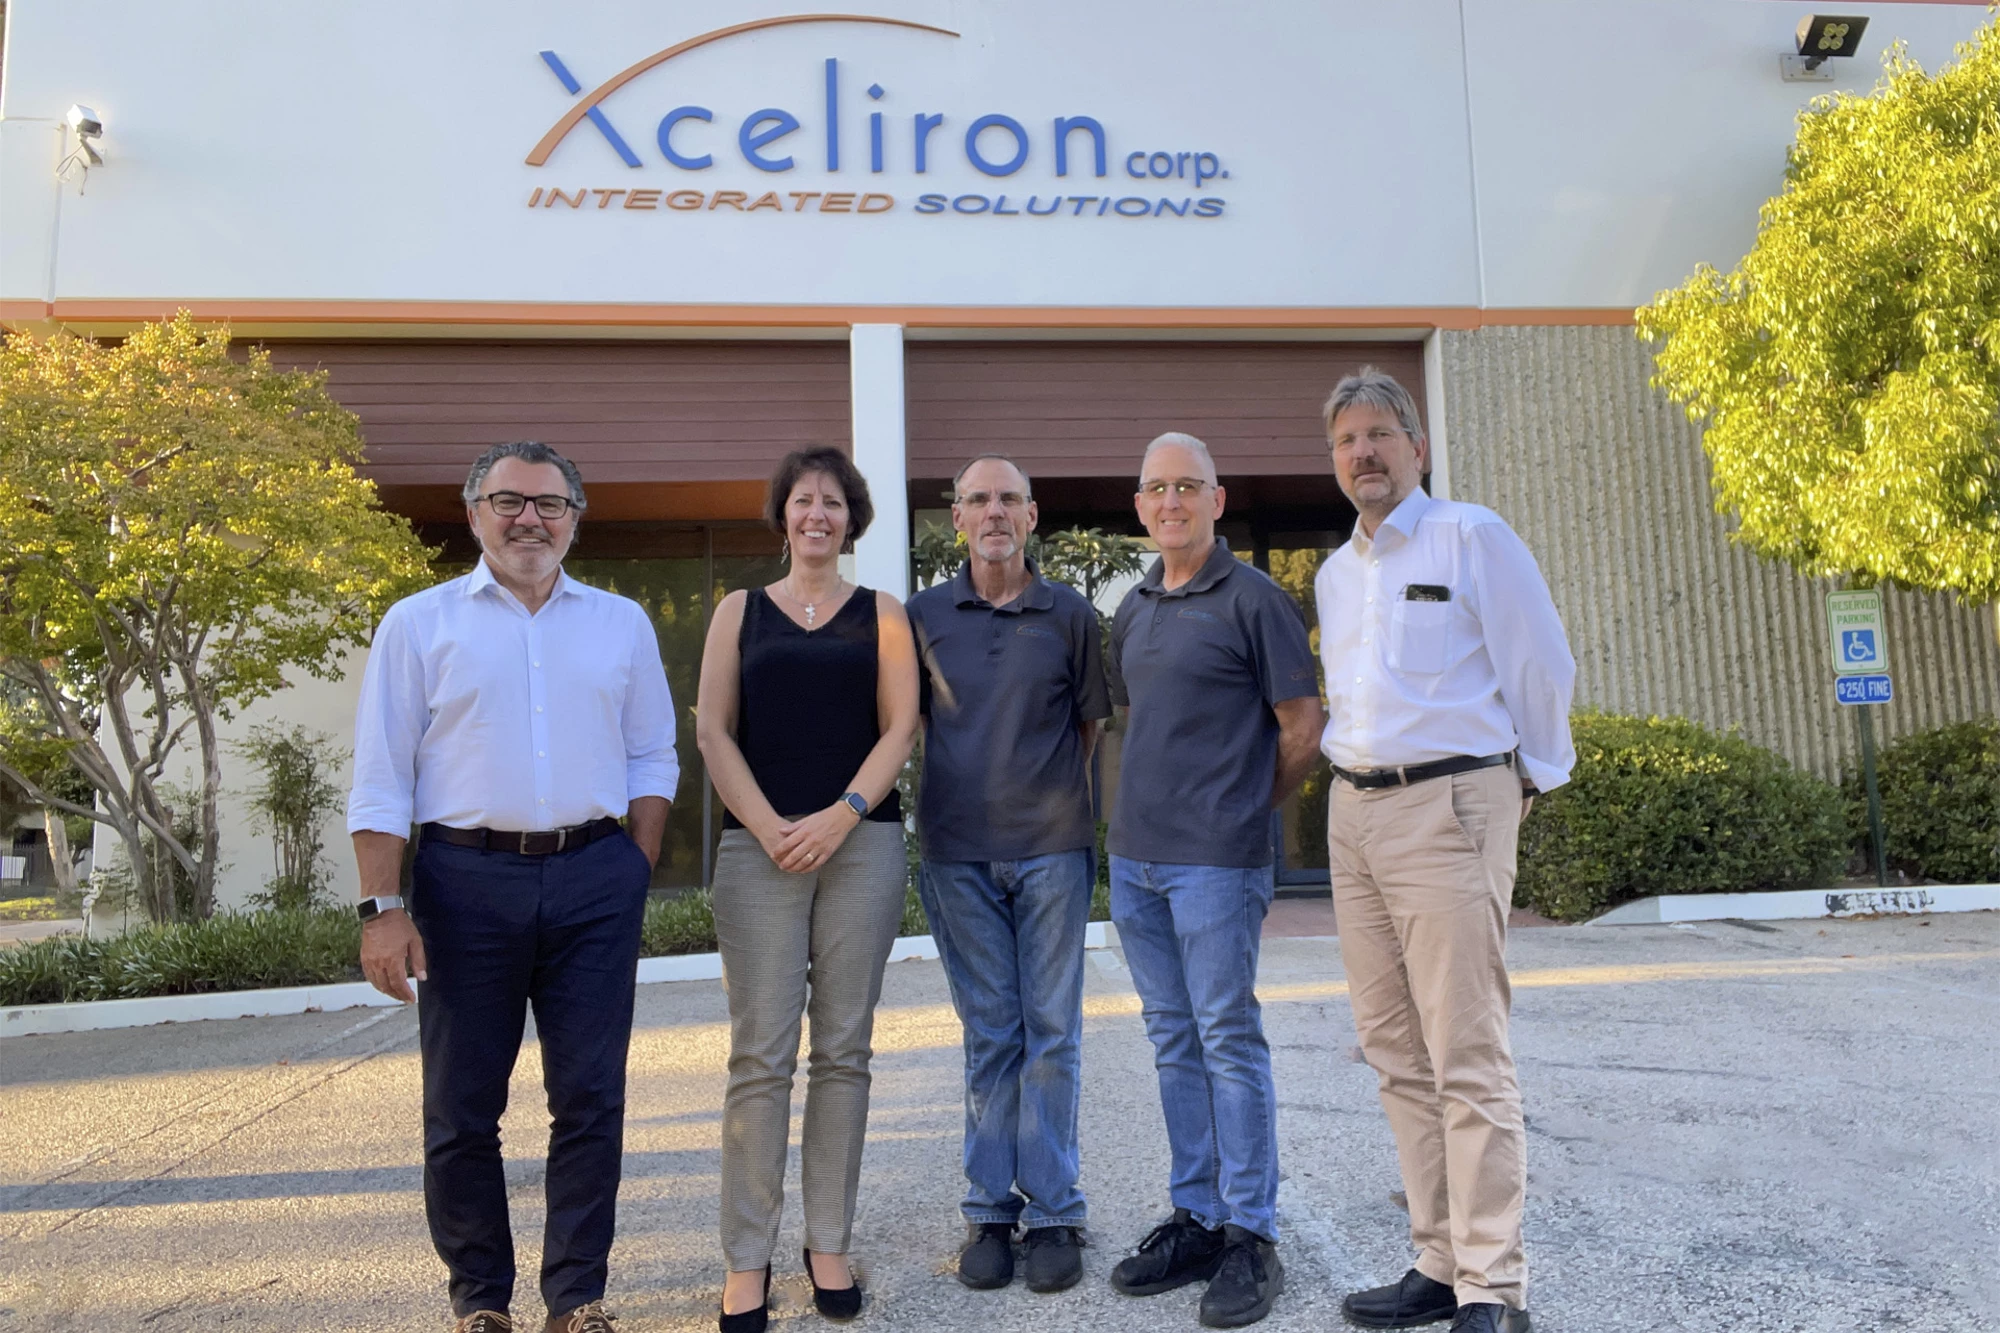 CERATIZIT acquires Xceliron Corp.